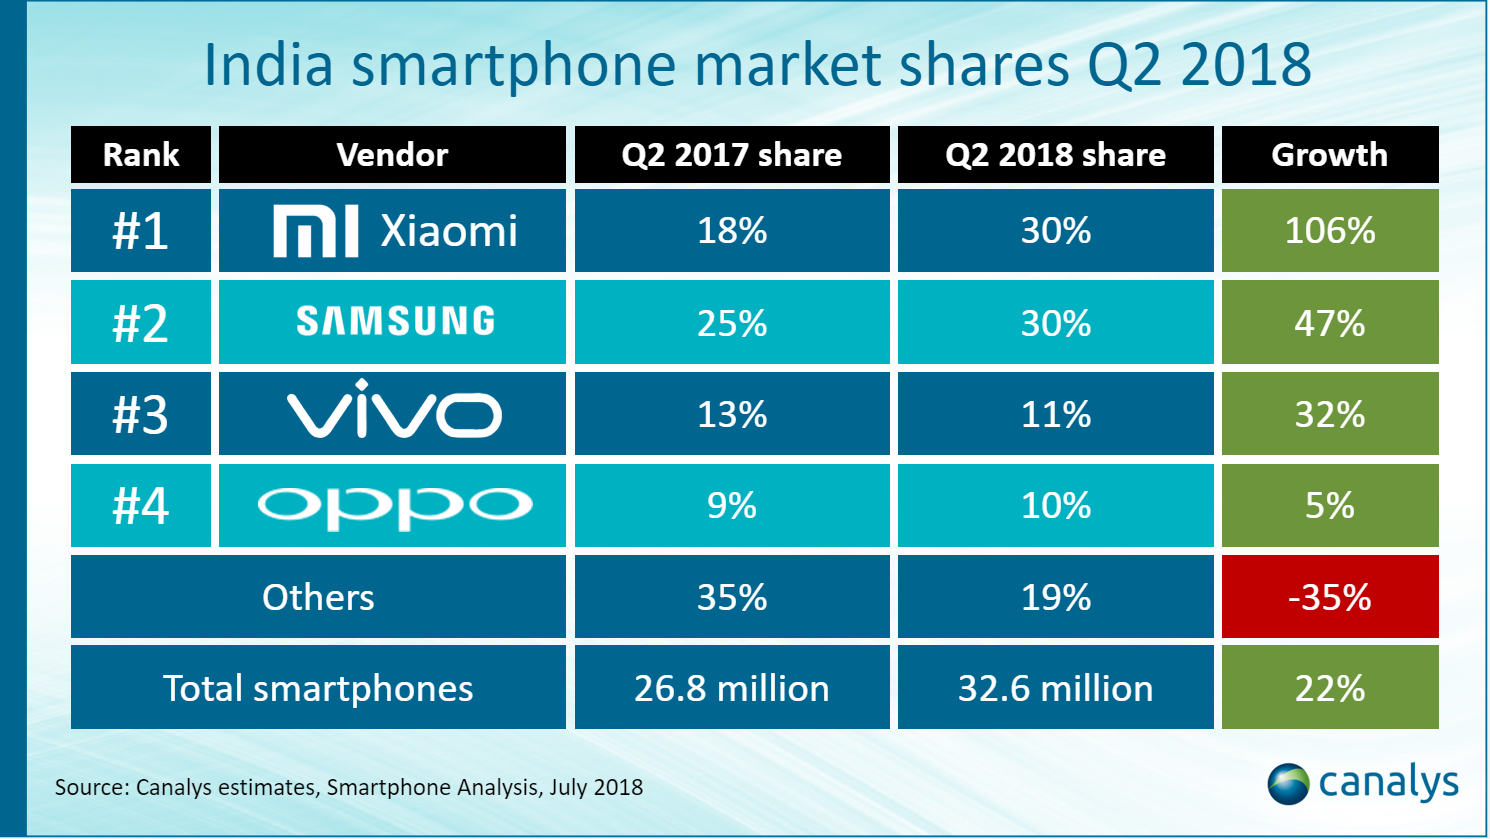 Top smartphone vendors in India Q2 2018